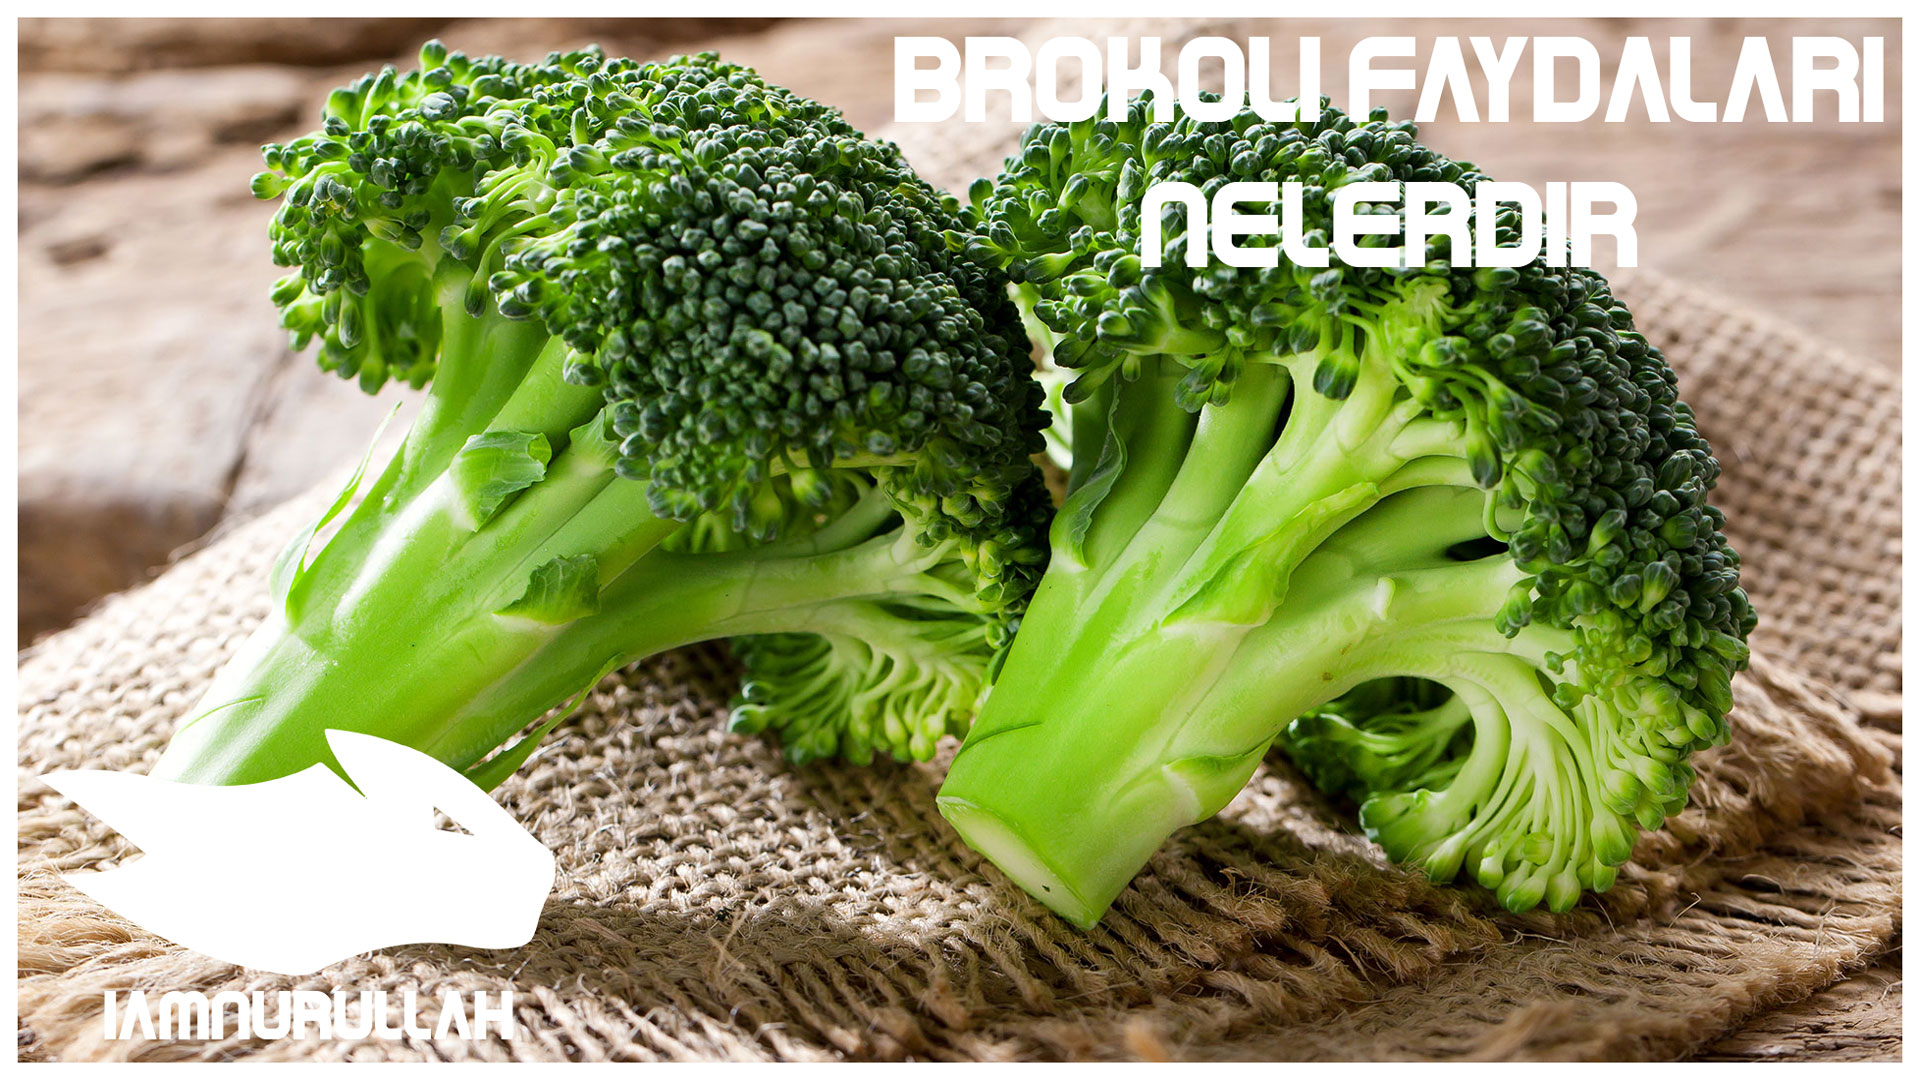 brokoli-faydalari-iamnurullah